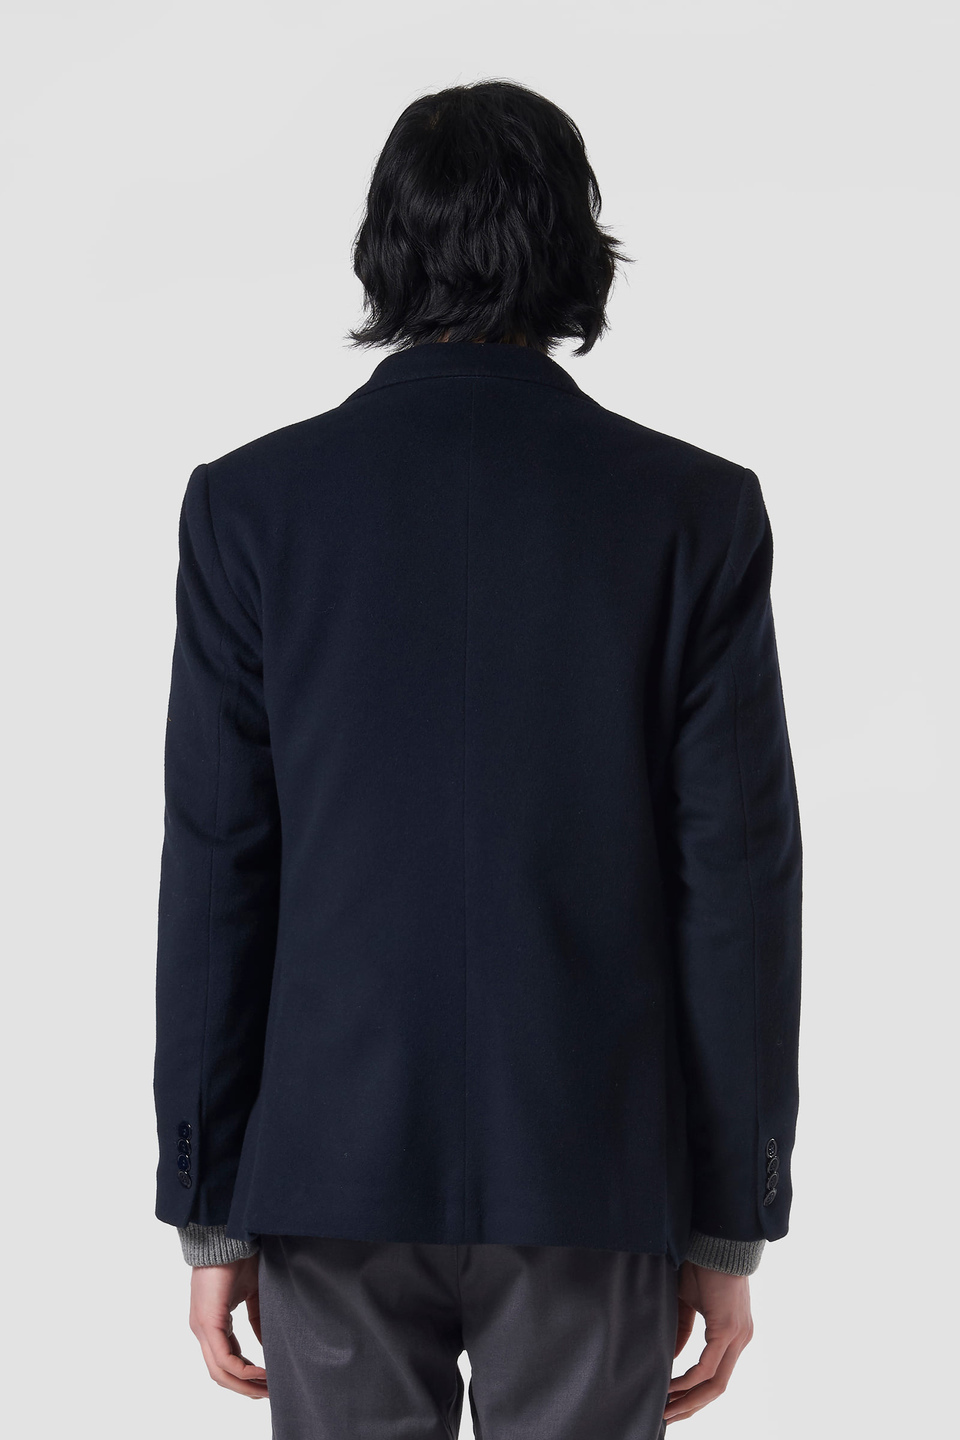 Giacca blazer uomo Blue Ribbon lana e cashmere regular fit | La Martina - Official Online Shop